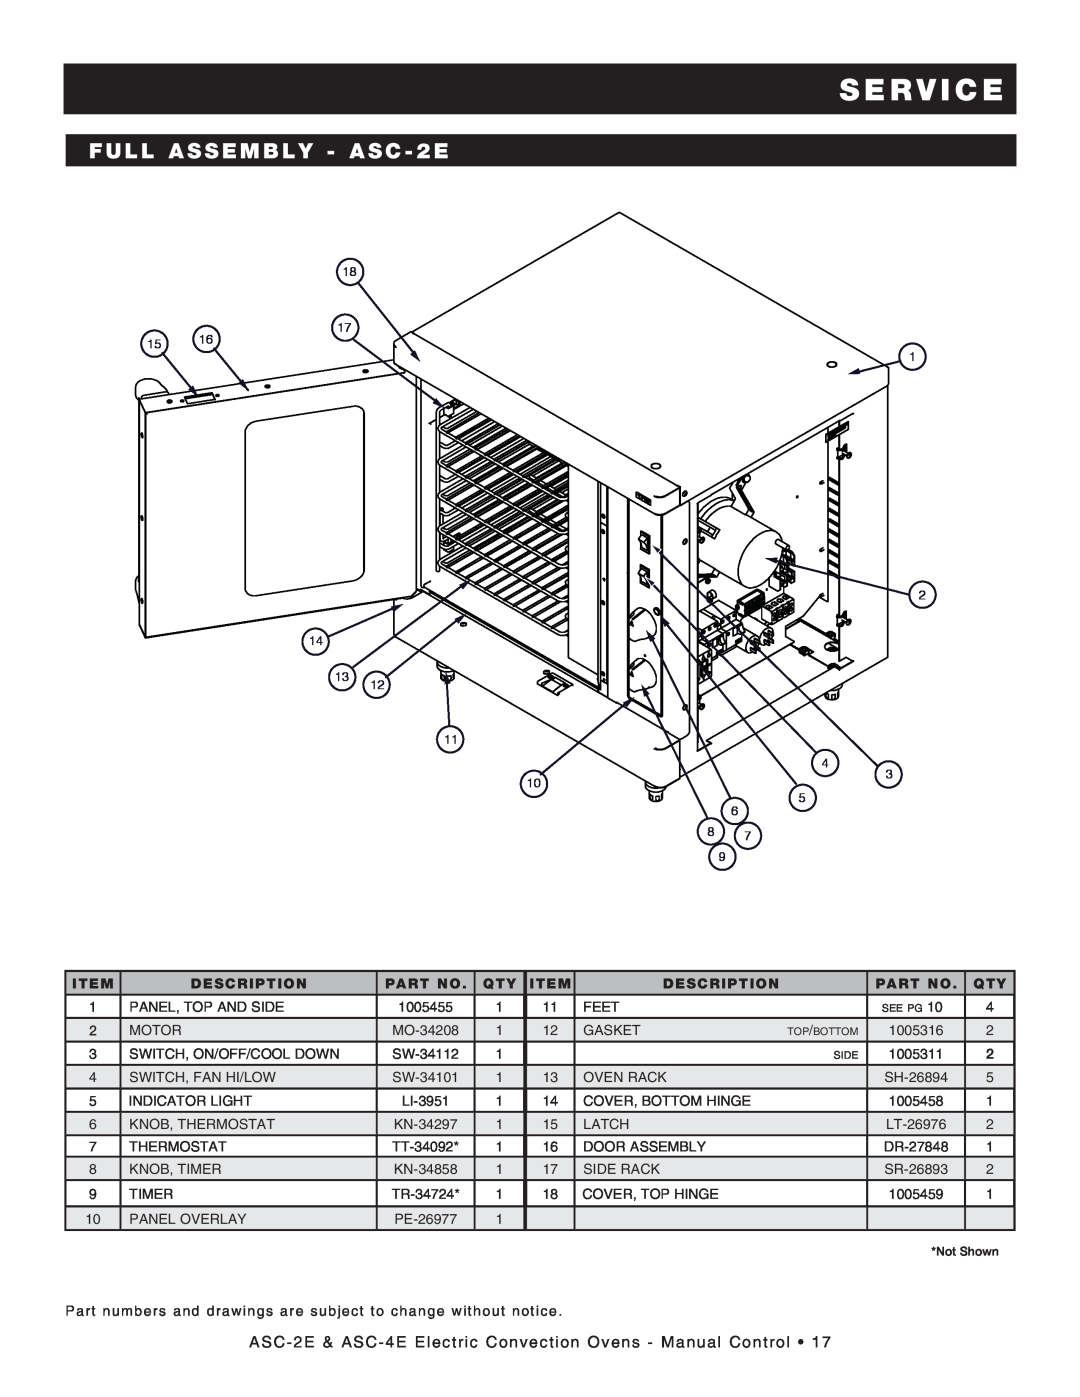 Alto-Shaam ASC-2E, ASC-4E, Convection Oven manual S E R V I C E, FULL ASSEMBLY - ASC - 2E, Description 